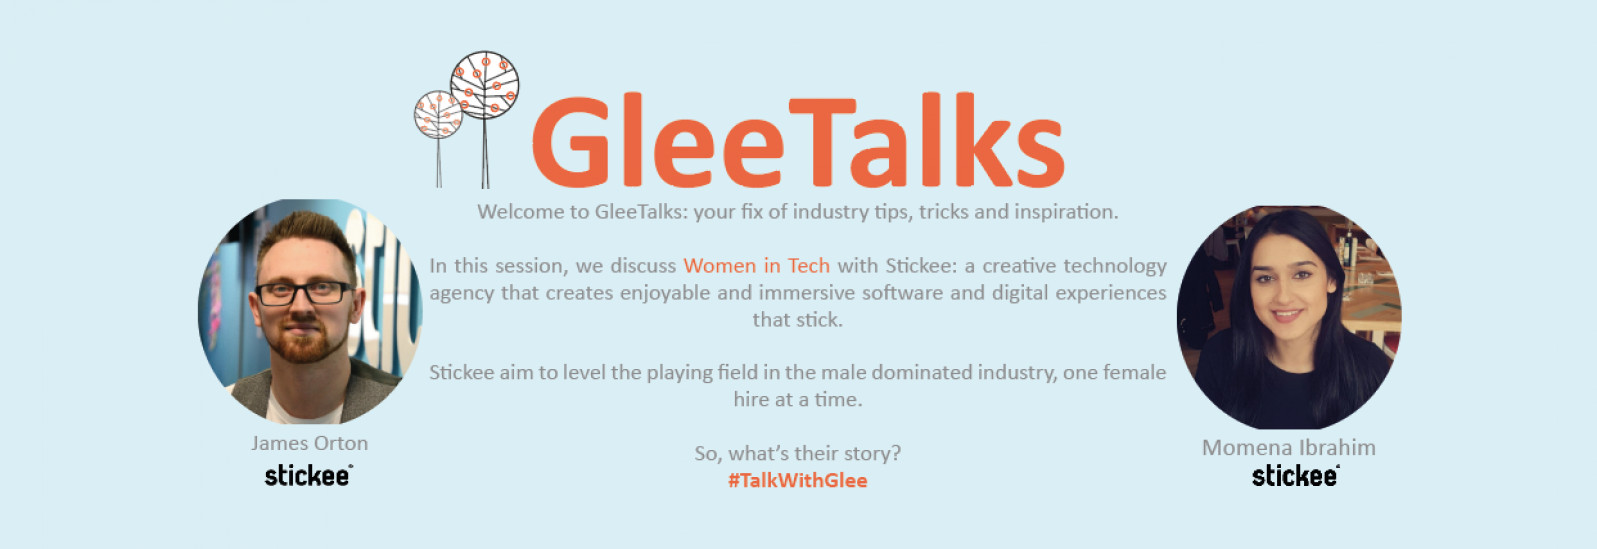 GleeTalks: Women in Tech